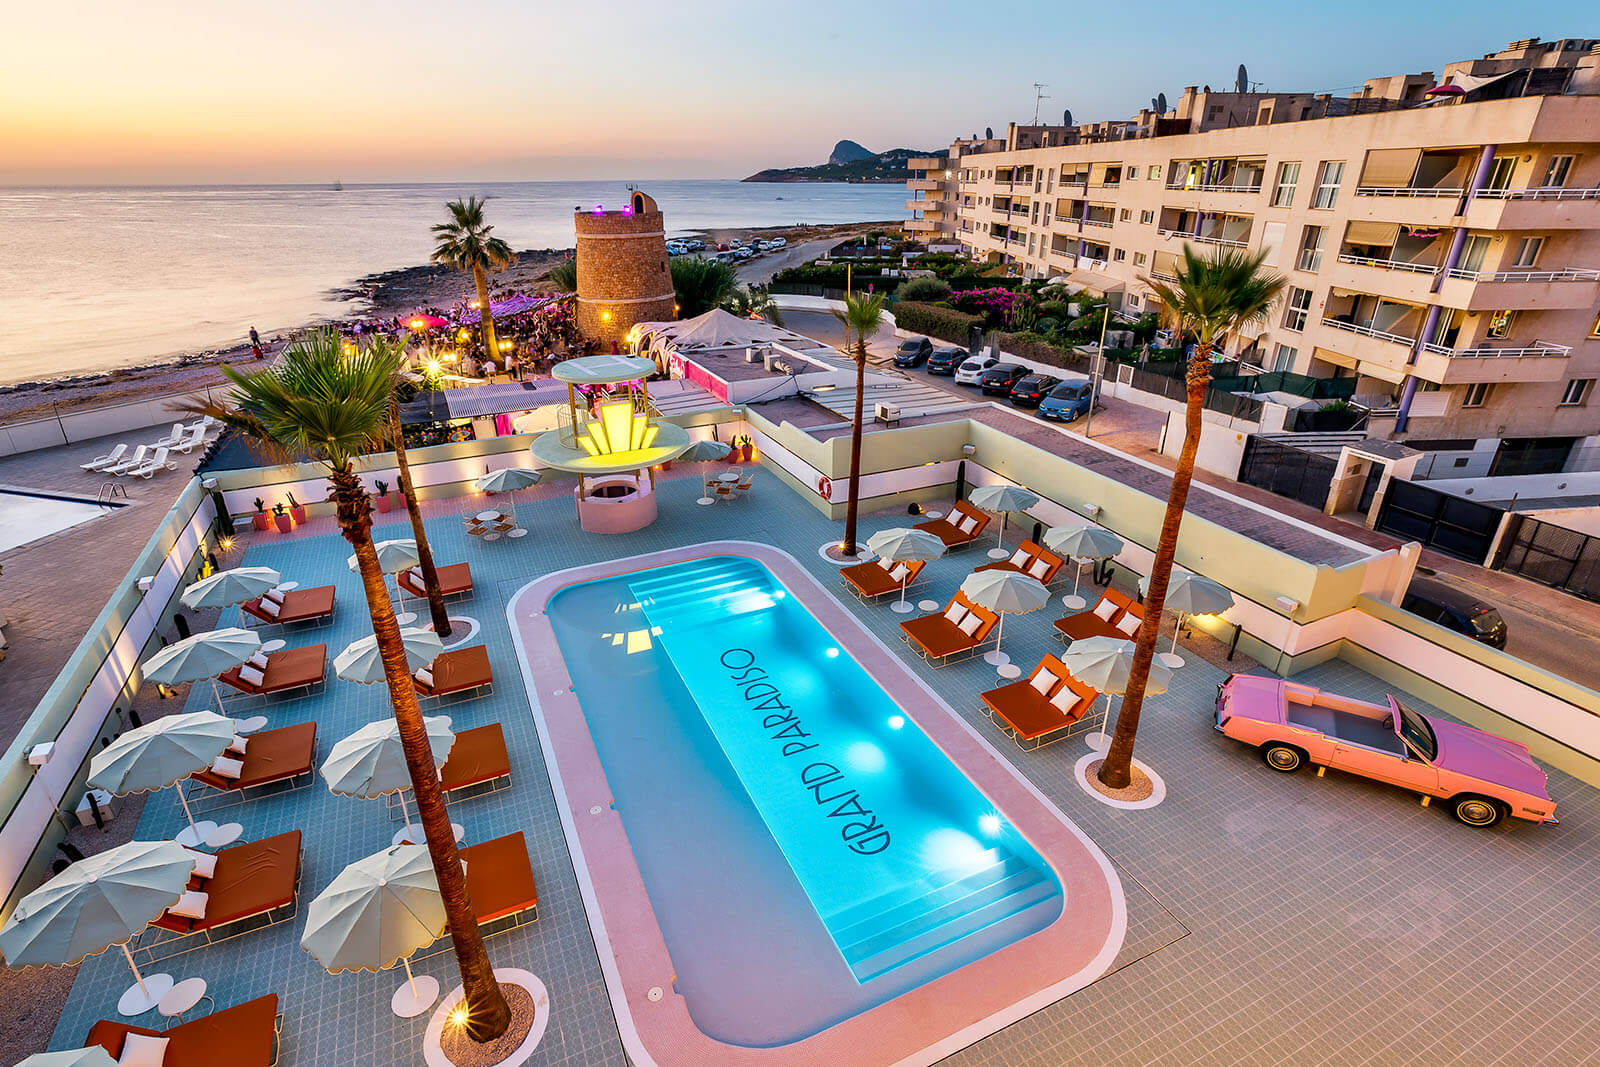 Grand Paradiso Ibiza